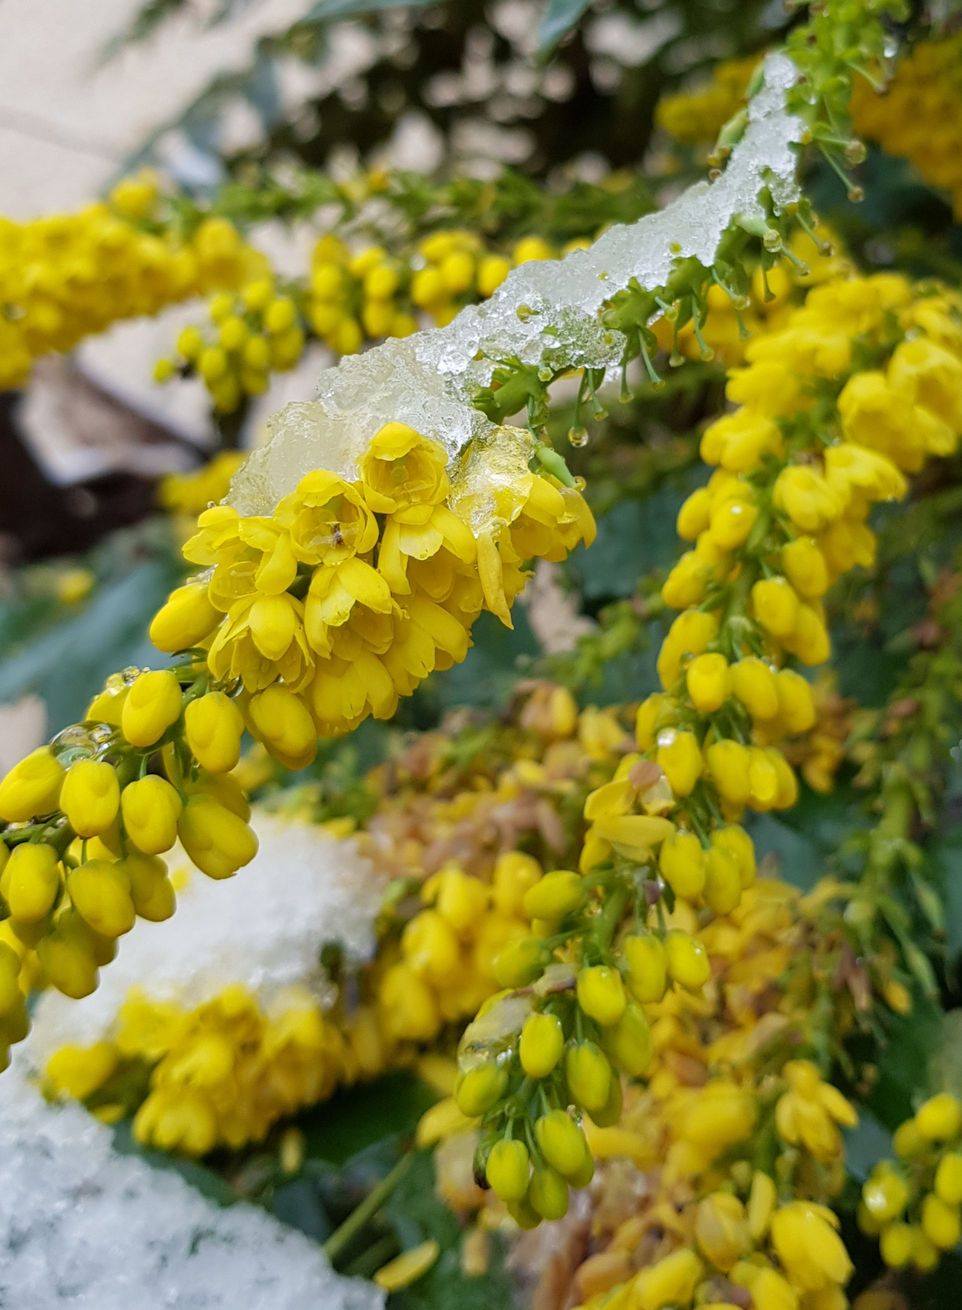 INTÉRÊT MELLIFÈRE

La plupart des ouvrages présentent la floraison du mahonia en mars/avril. Dans mon jardin (Albi) la floraison est en décembre et janvier, ce qui en fait un arbuste intéressant pour nourrir les insectes à une période où c’est plutôt la disette.